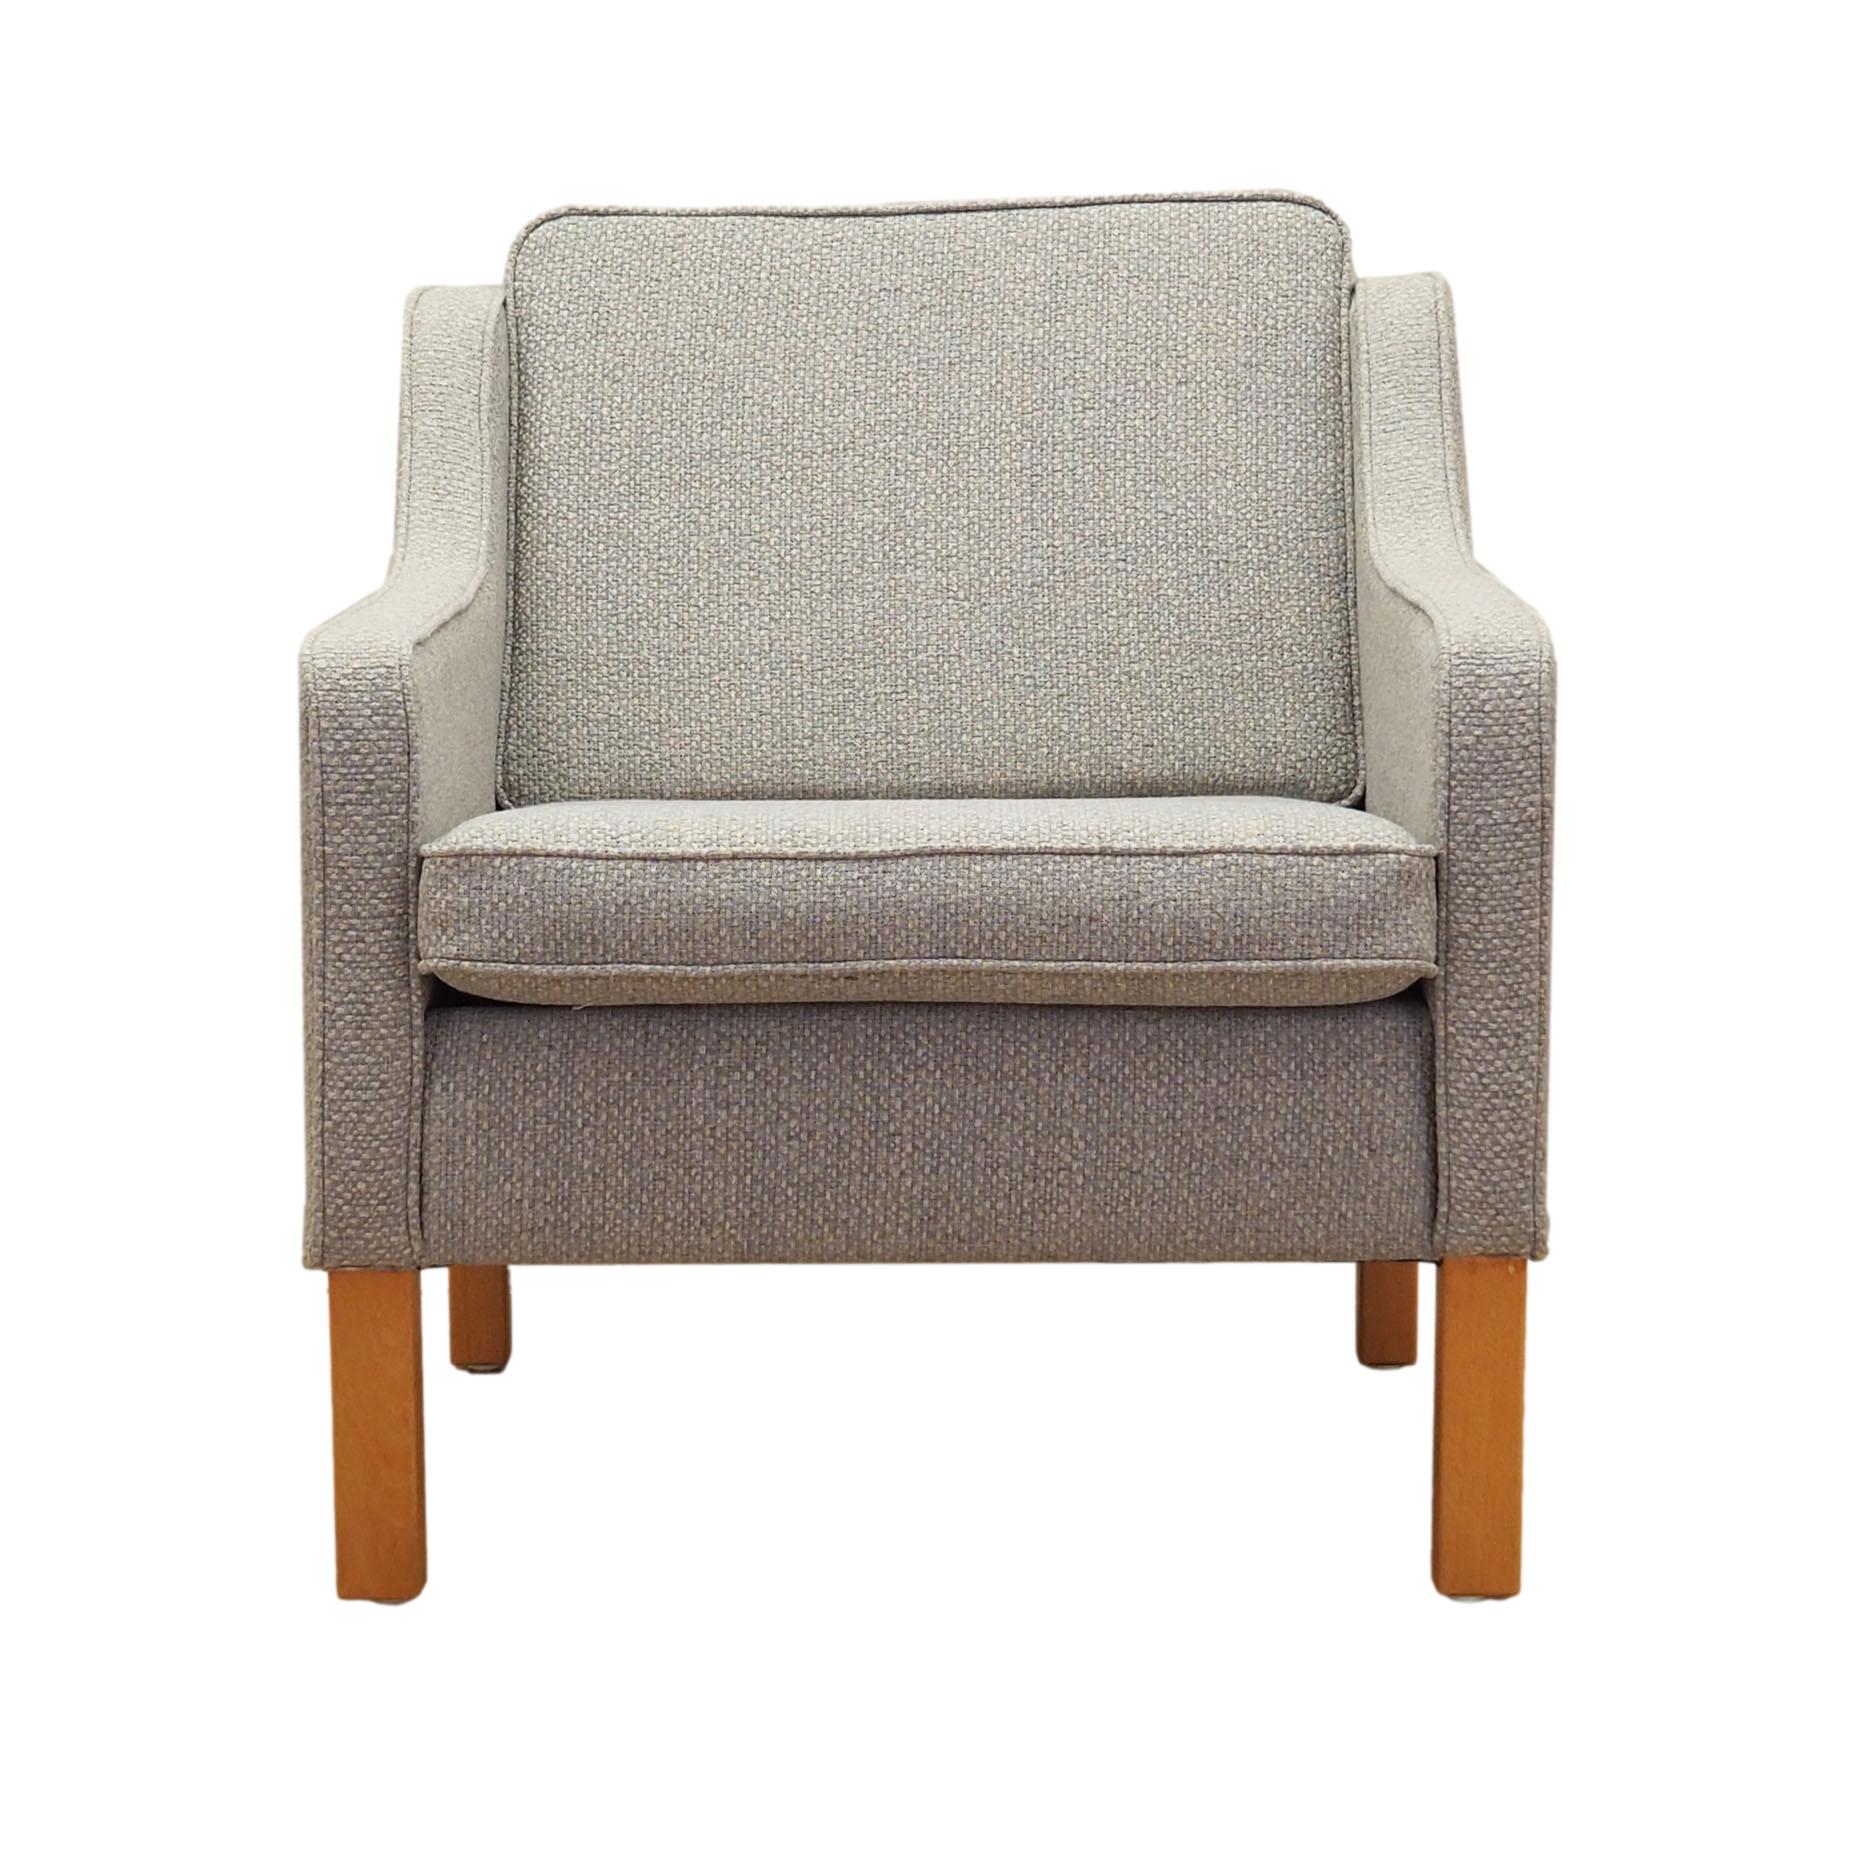 Vintage Sessel Buchenholz Textil Grau 1970er Jahre